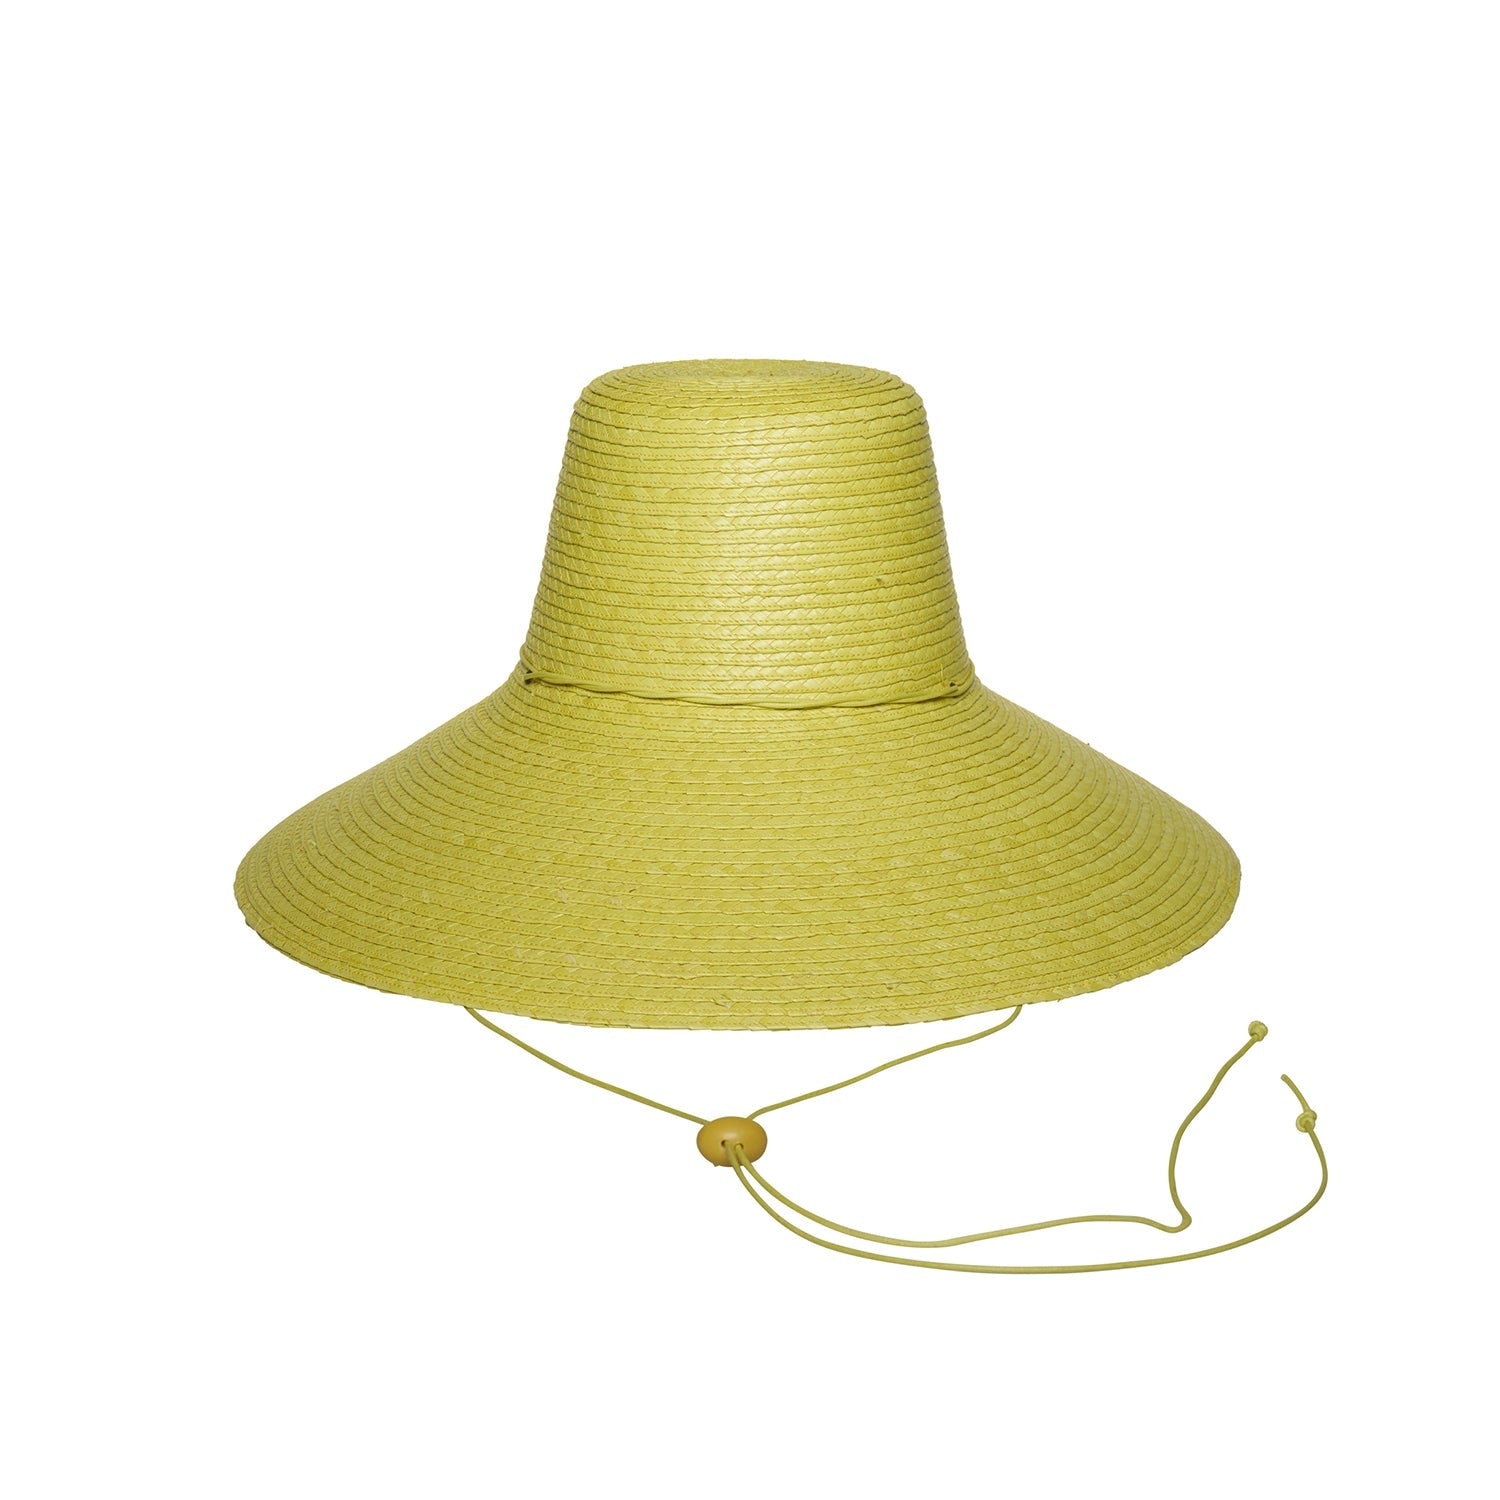 Monte Extra Wide Brim - Hat artesano